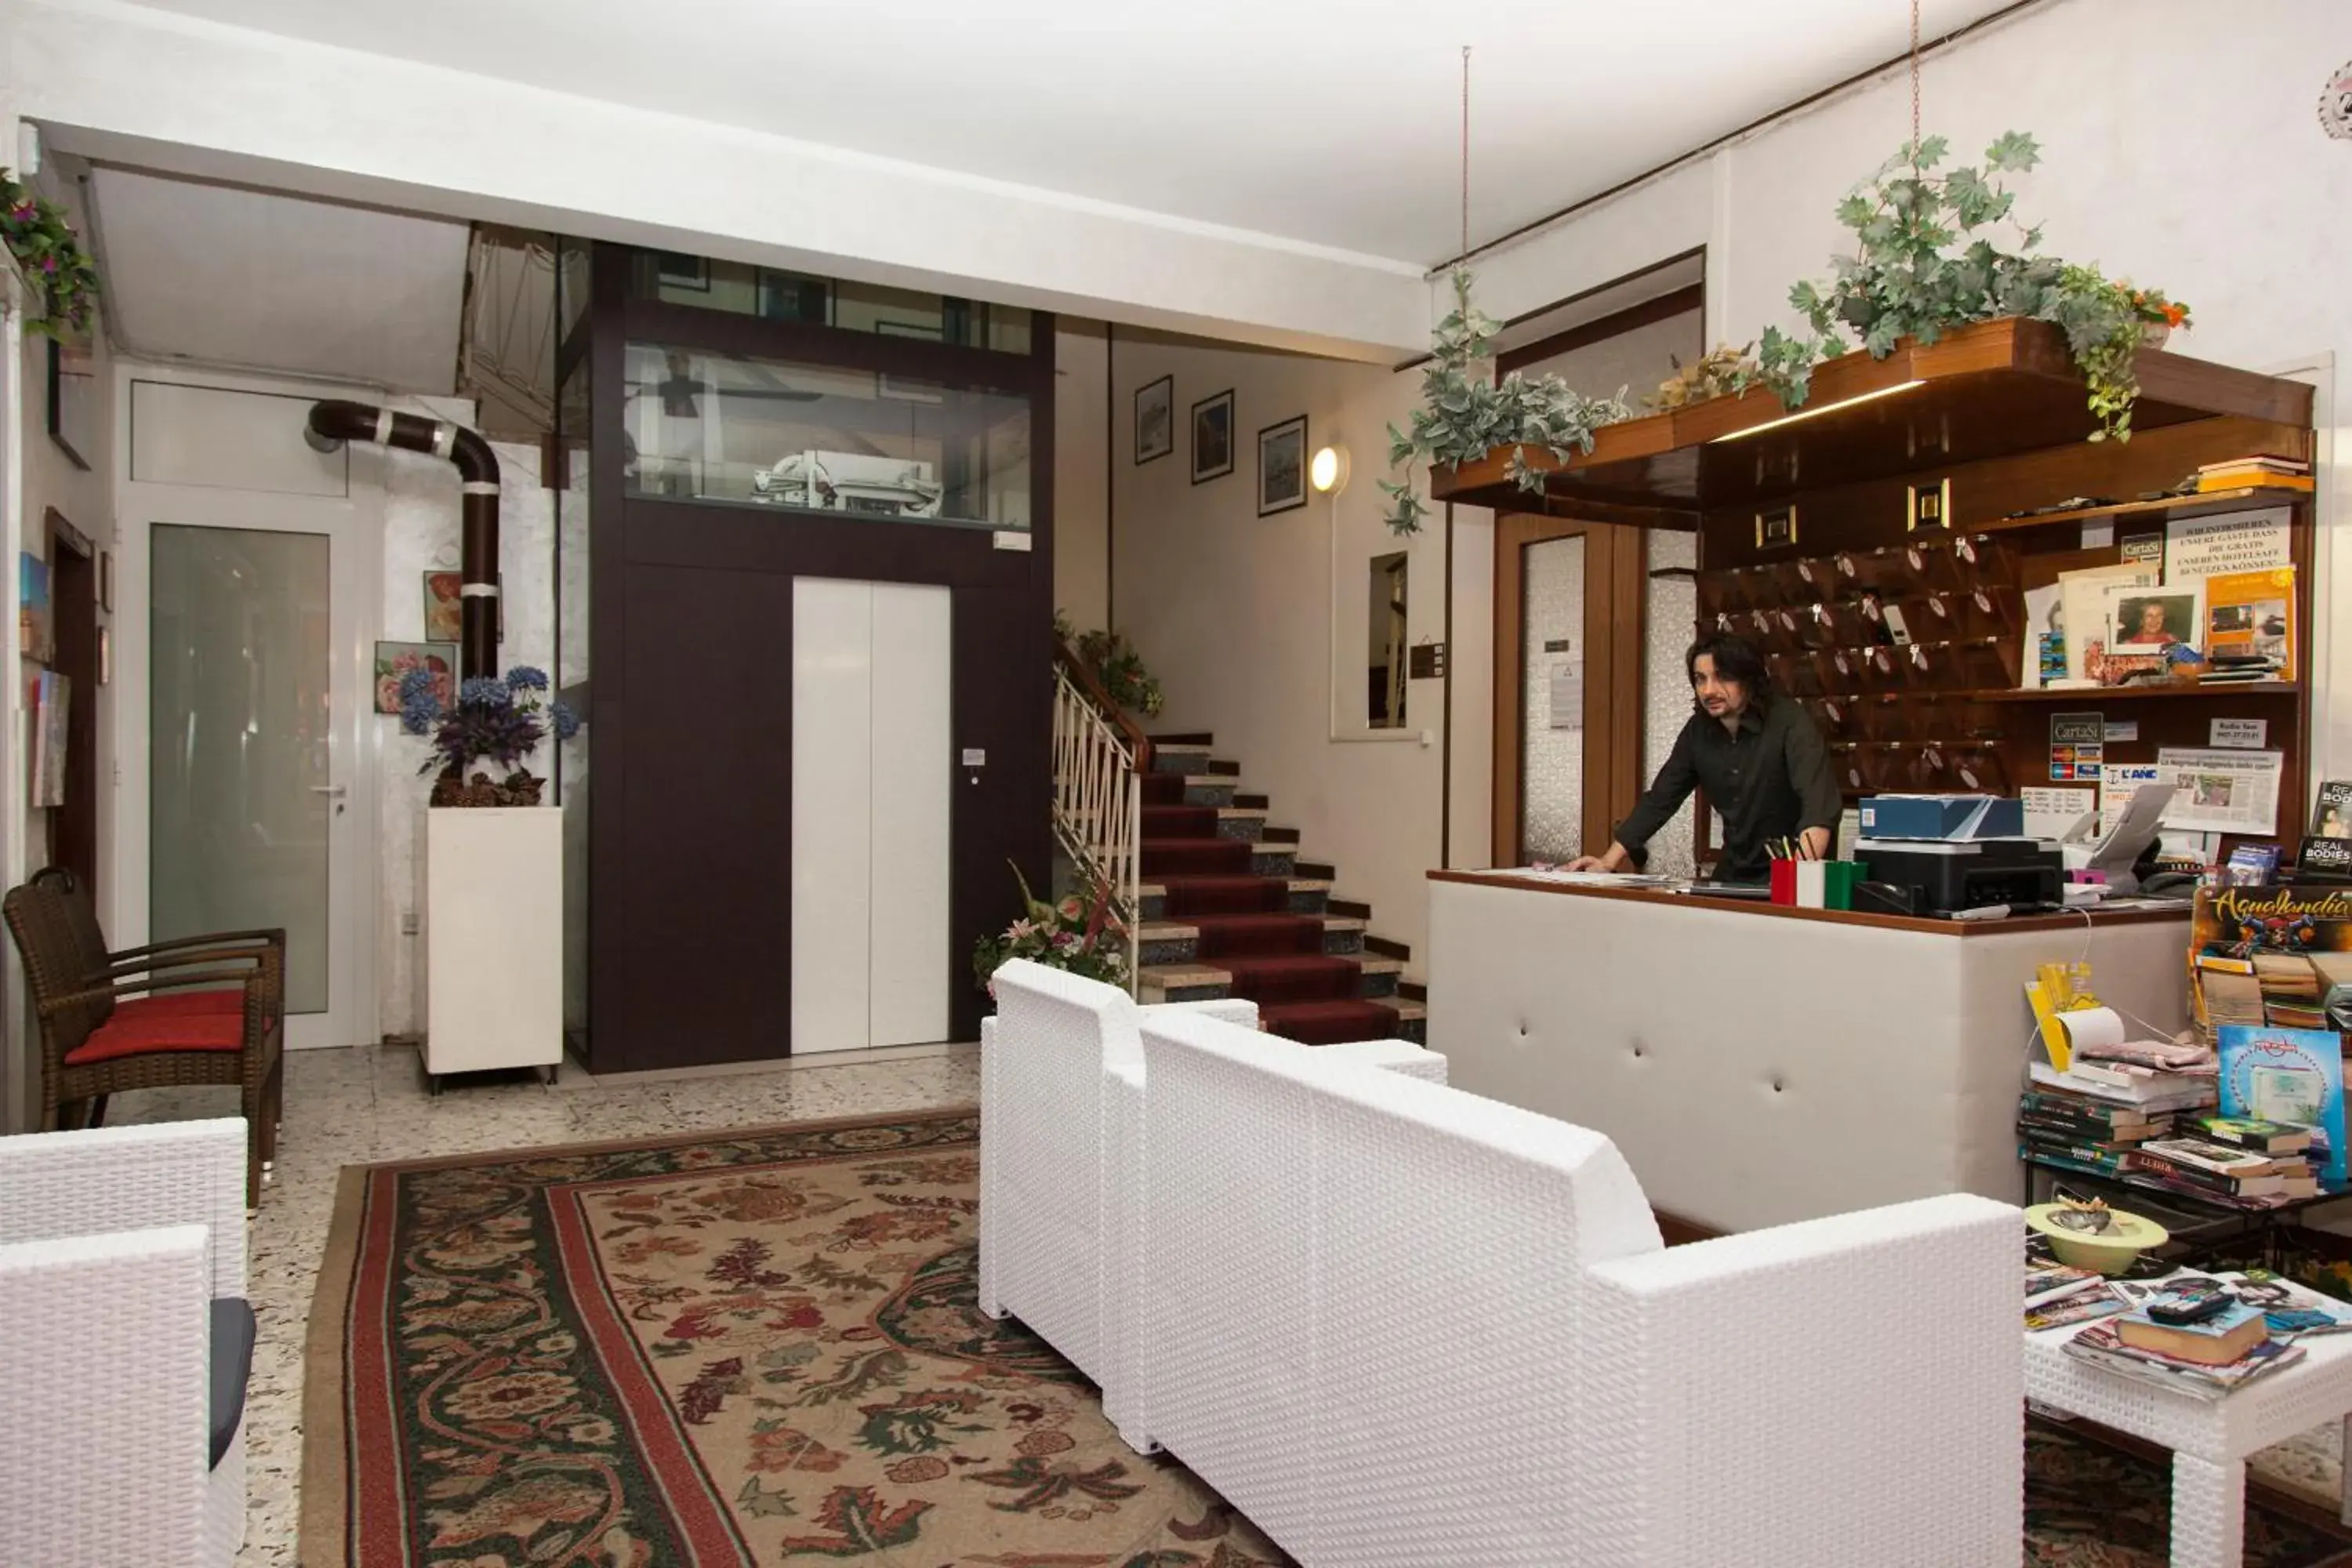 Lobby or reception, Lobby/Reception in Hotel Taormina